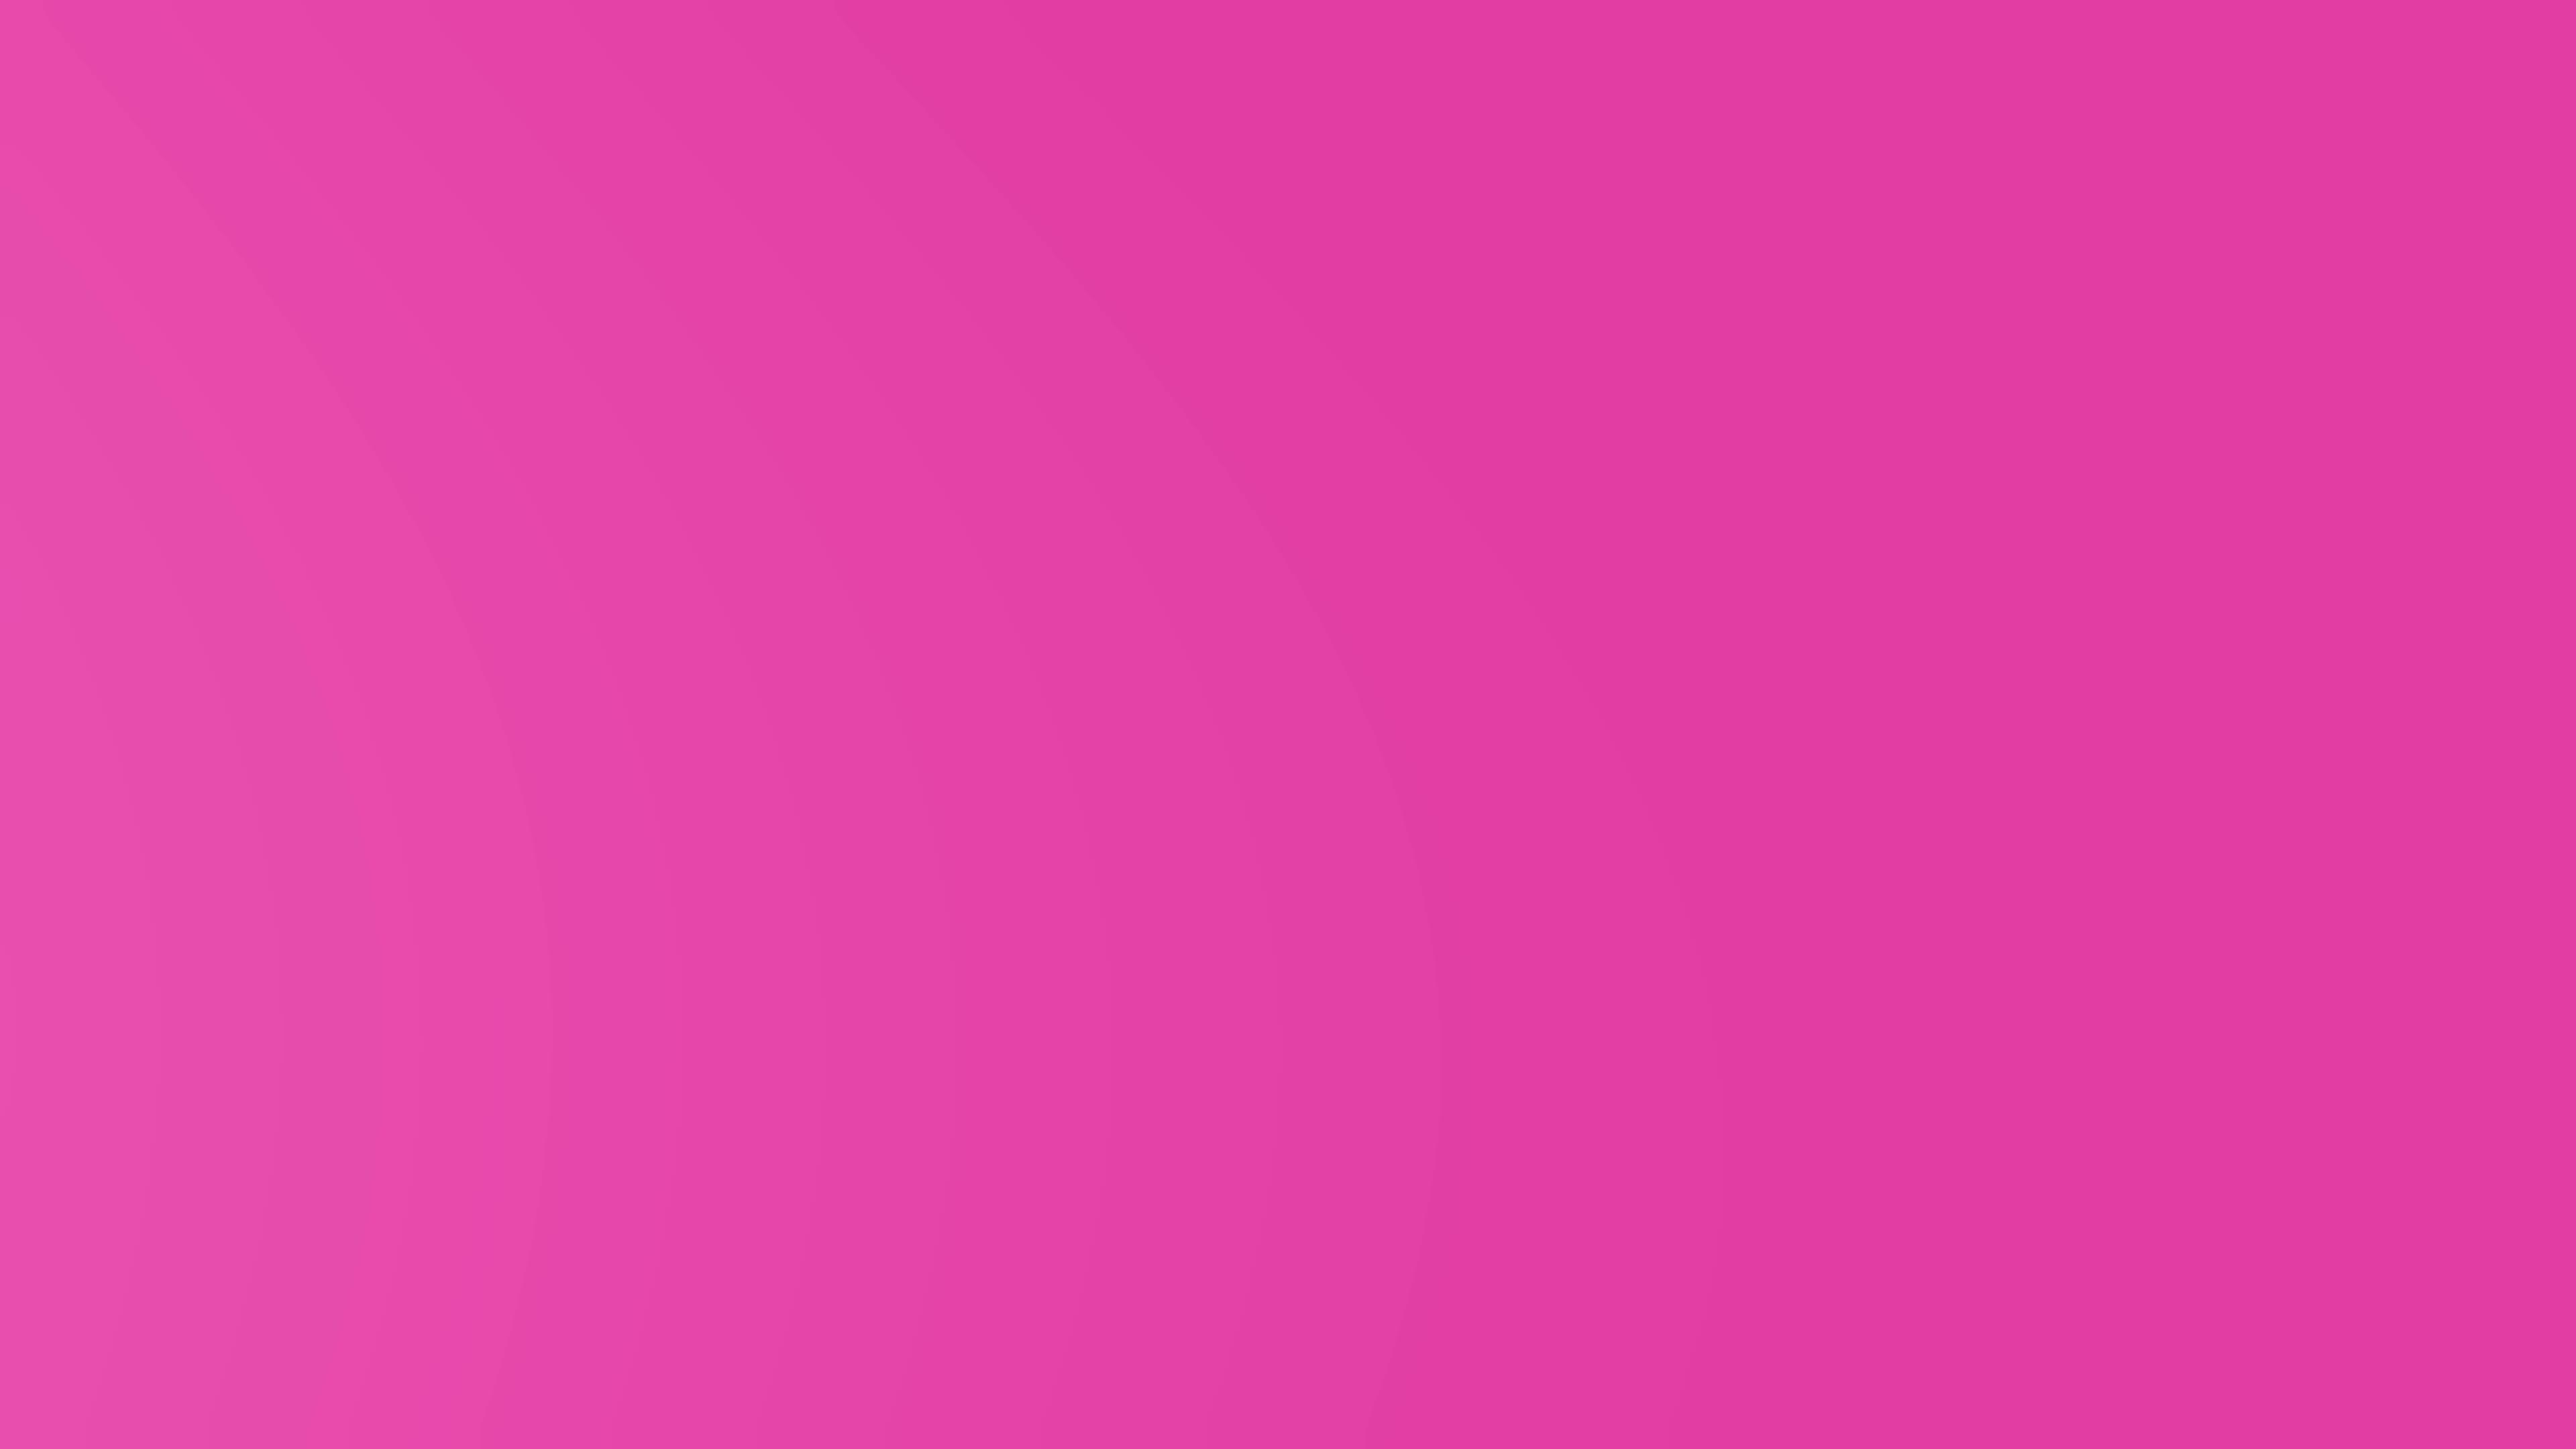 Video nền màu hồng: Video nền màu hồng là hoàn hảo để tăng cường một sự kiện đặc biệt hoặc tạo ra một video quảng cáo thú vị. Sự sáng tạo và màu sắc nữ tính của màu hồng sẽ giúp bạn tạo ra nhiều trải nghiệm hấp dẫn.